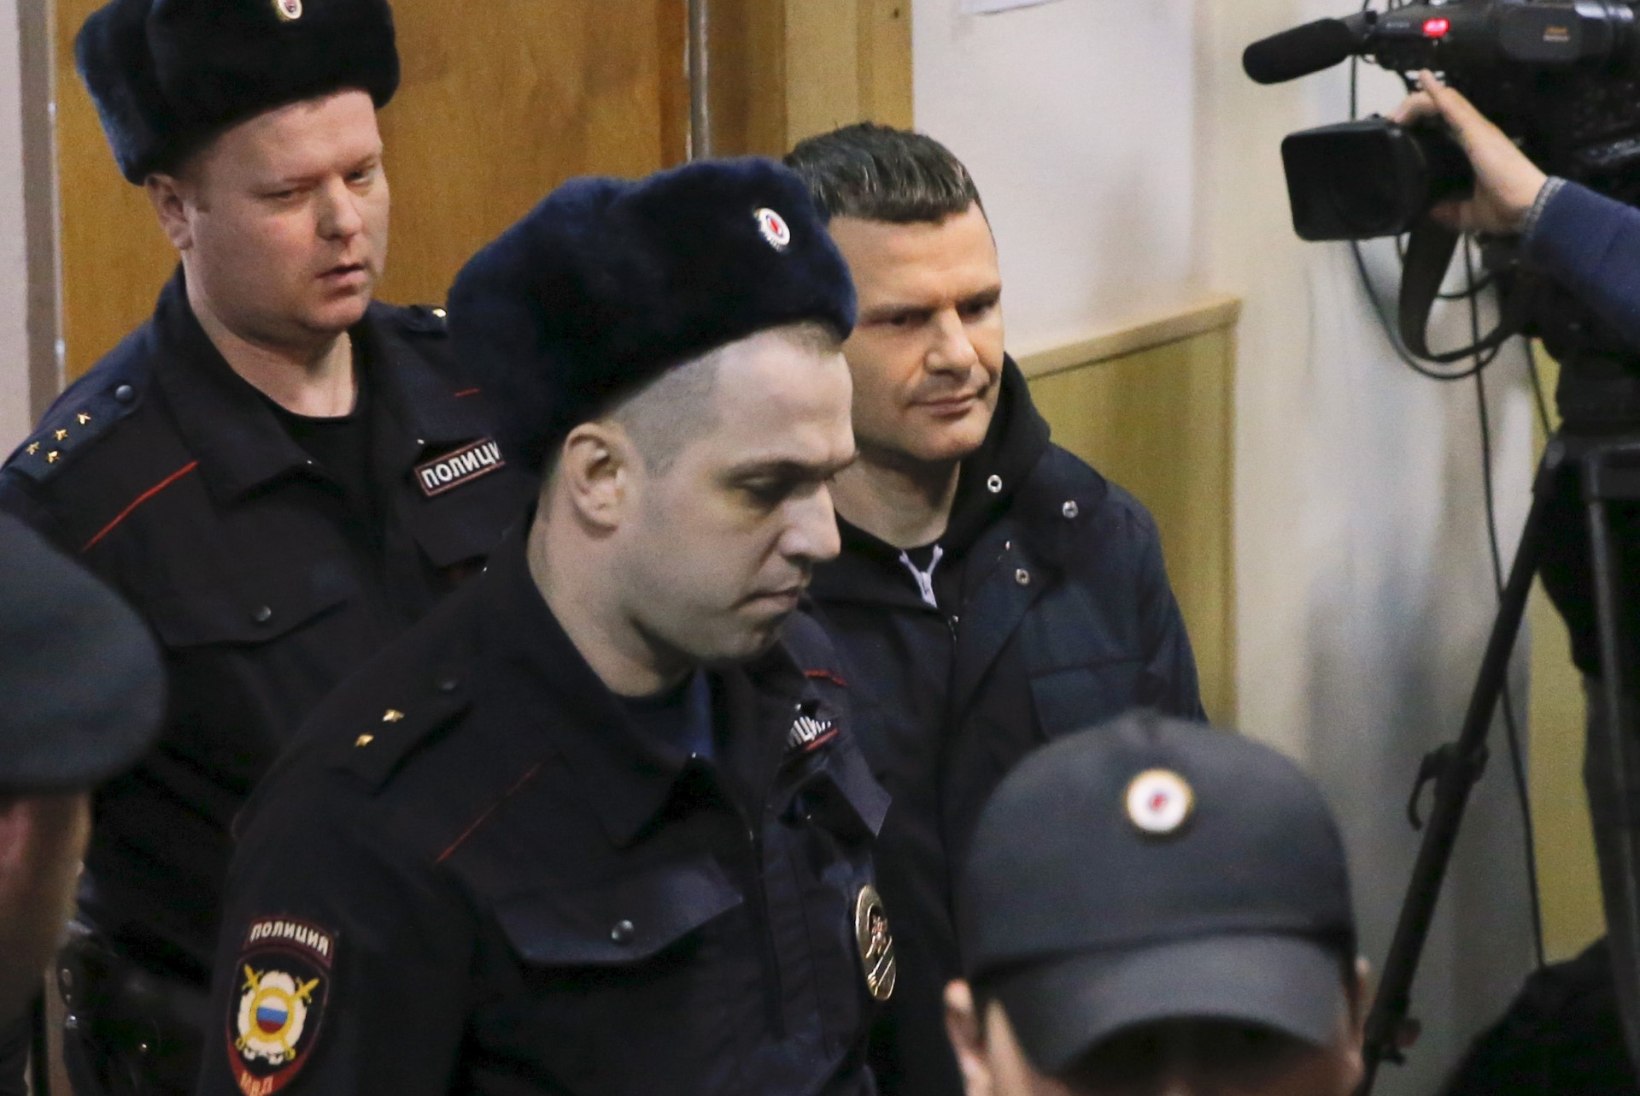 Moskvas arreteeriti Domodedovo lennuvälja omanik